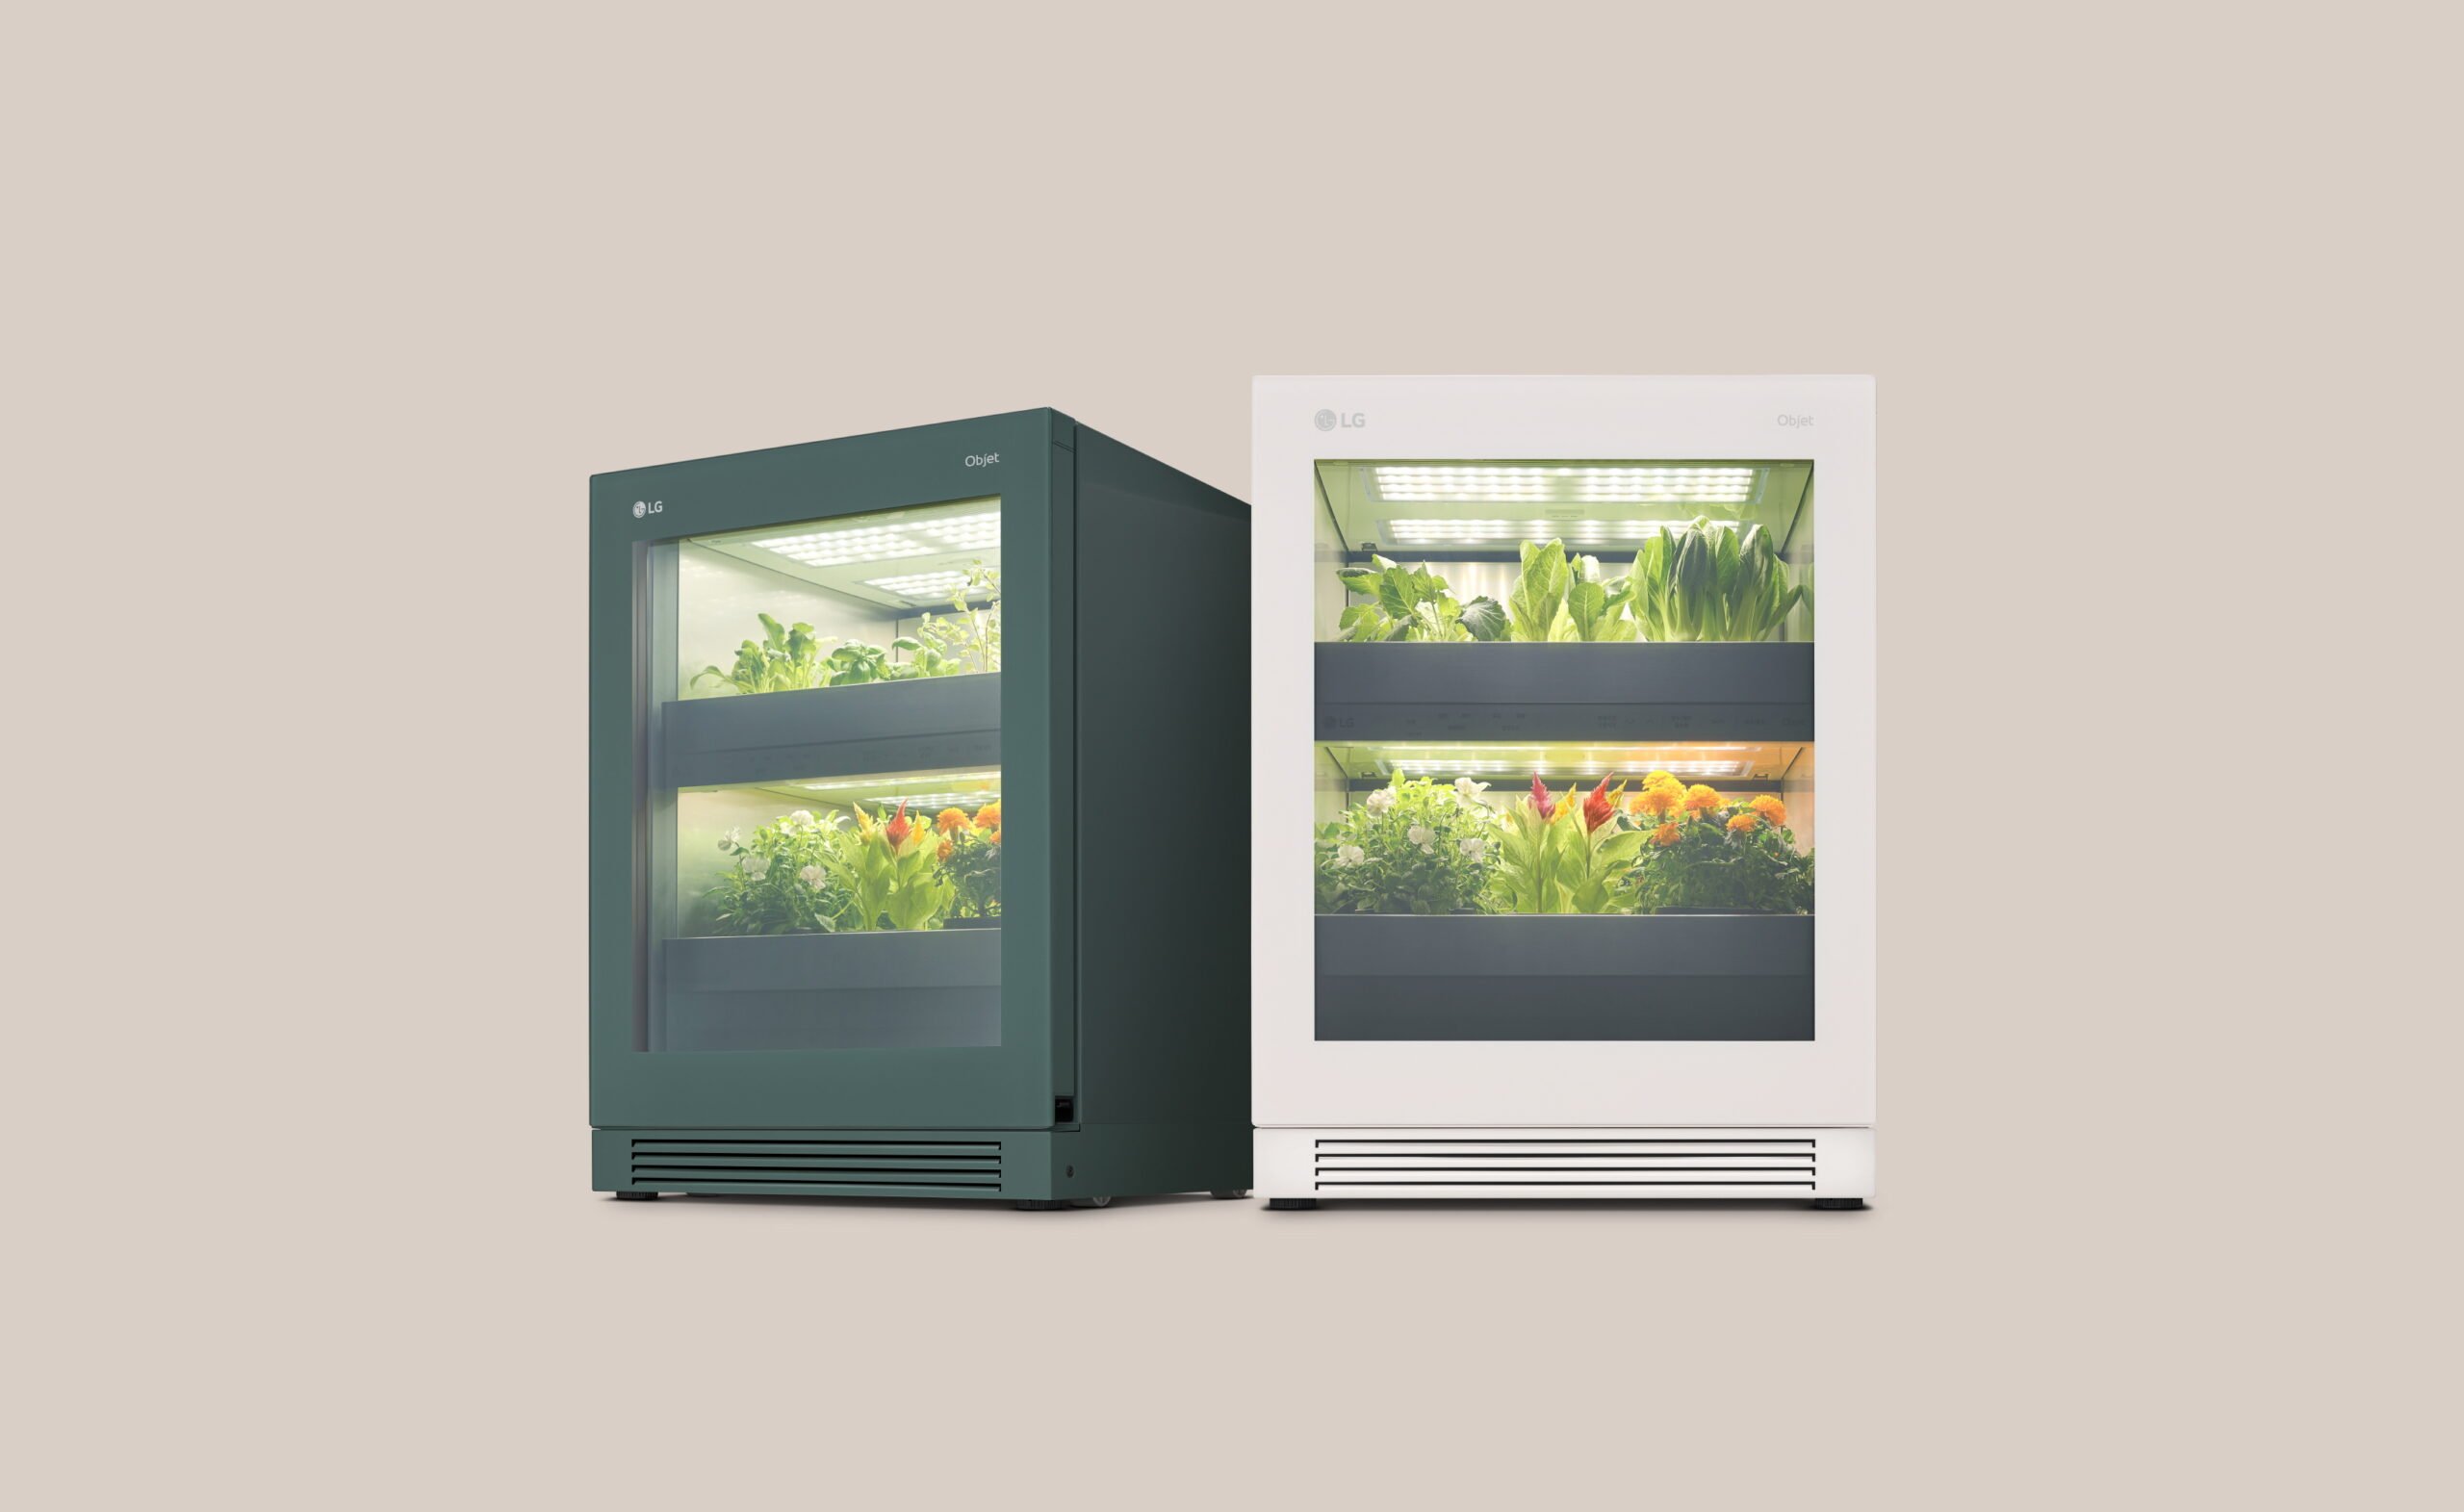 LG Tiiun - hệ thống trồng rau thông minh tại gia, giá 1.250 USD